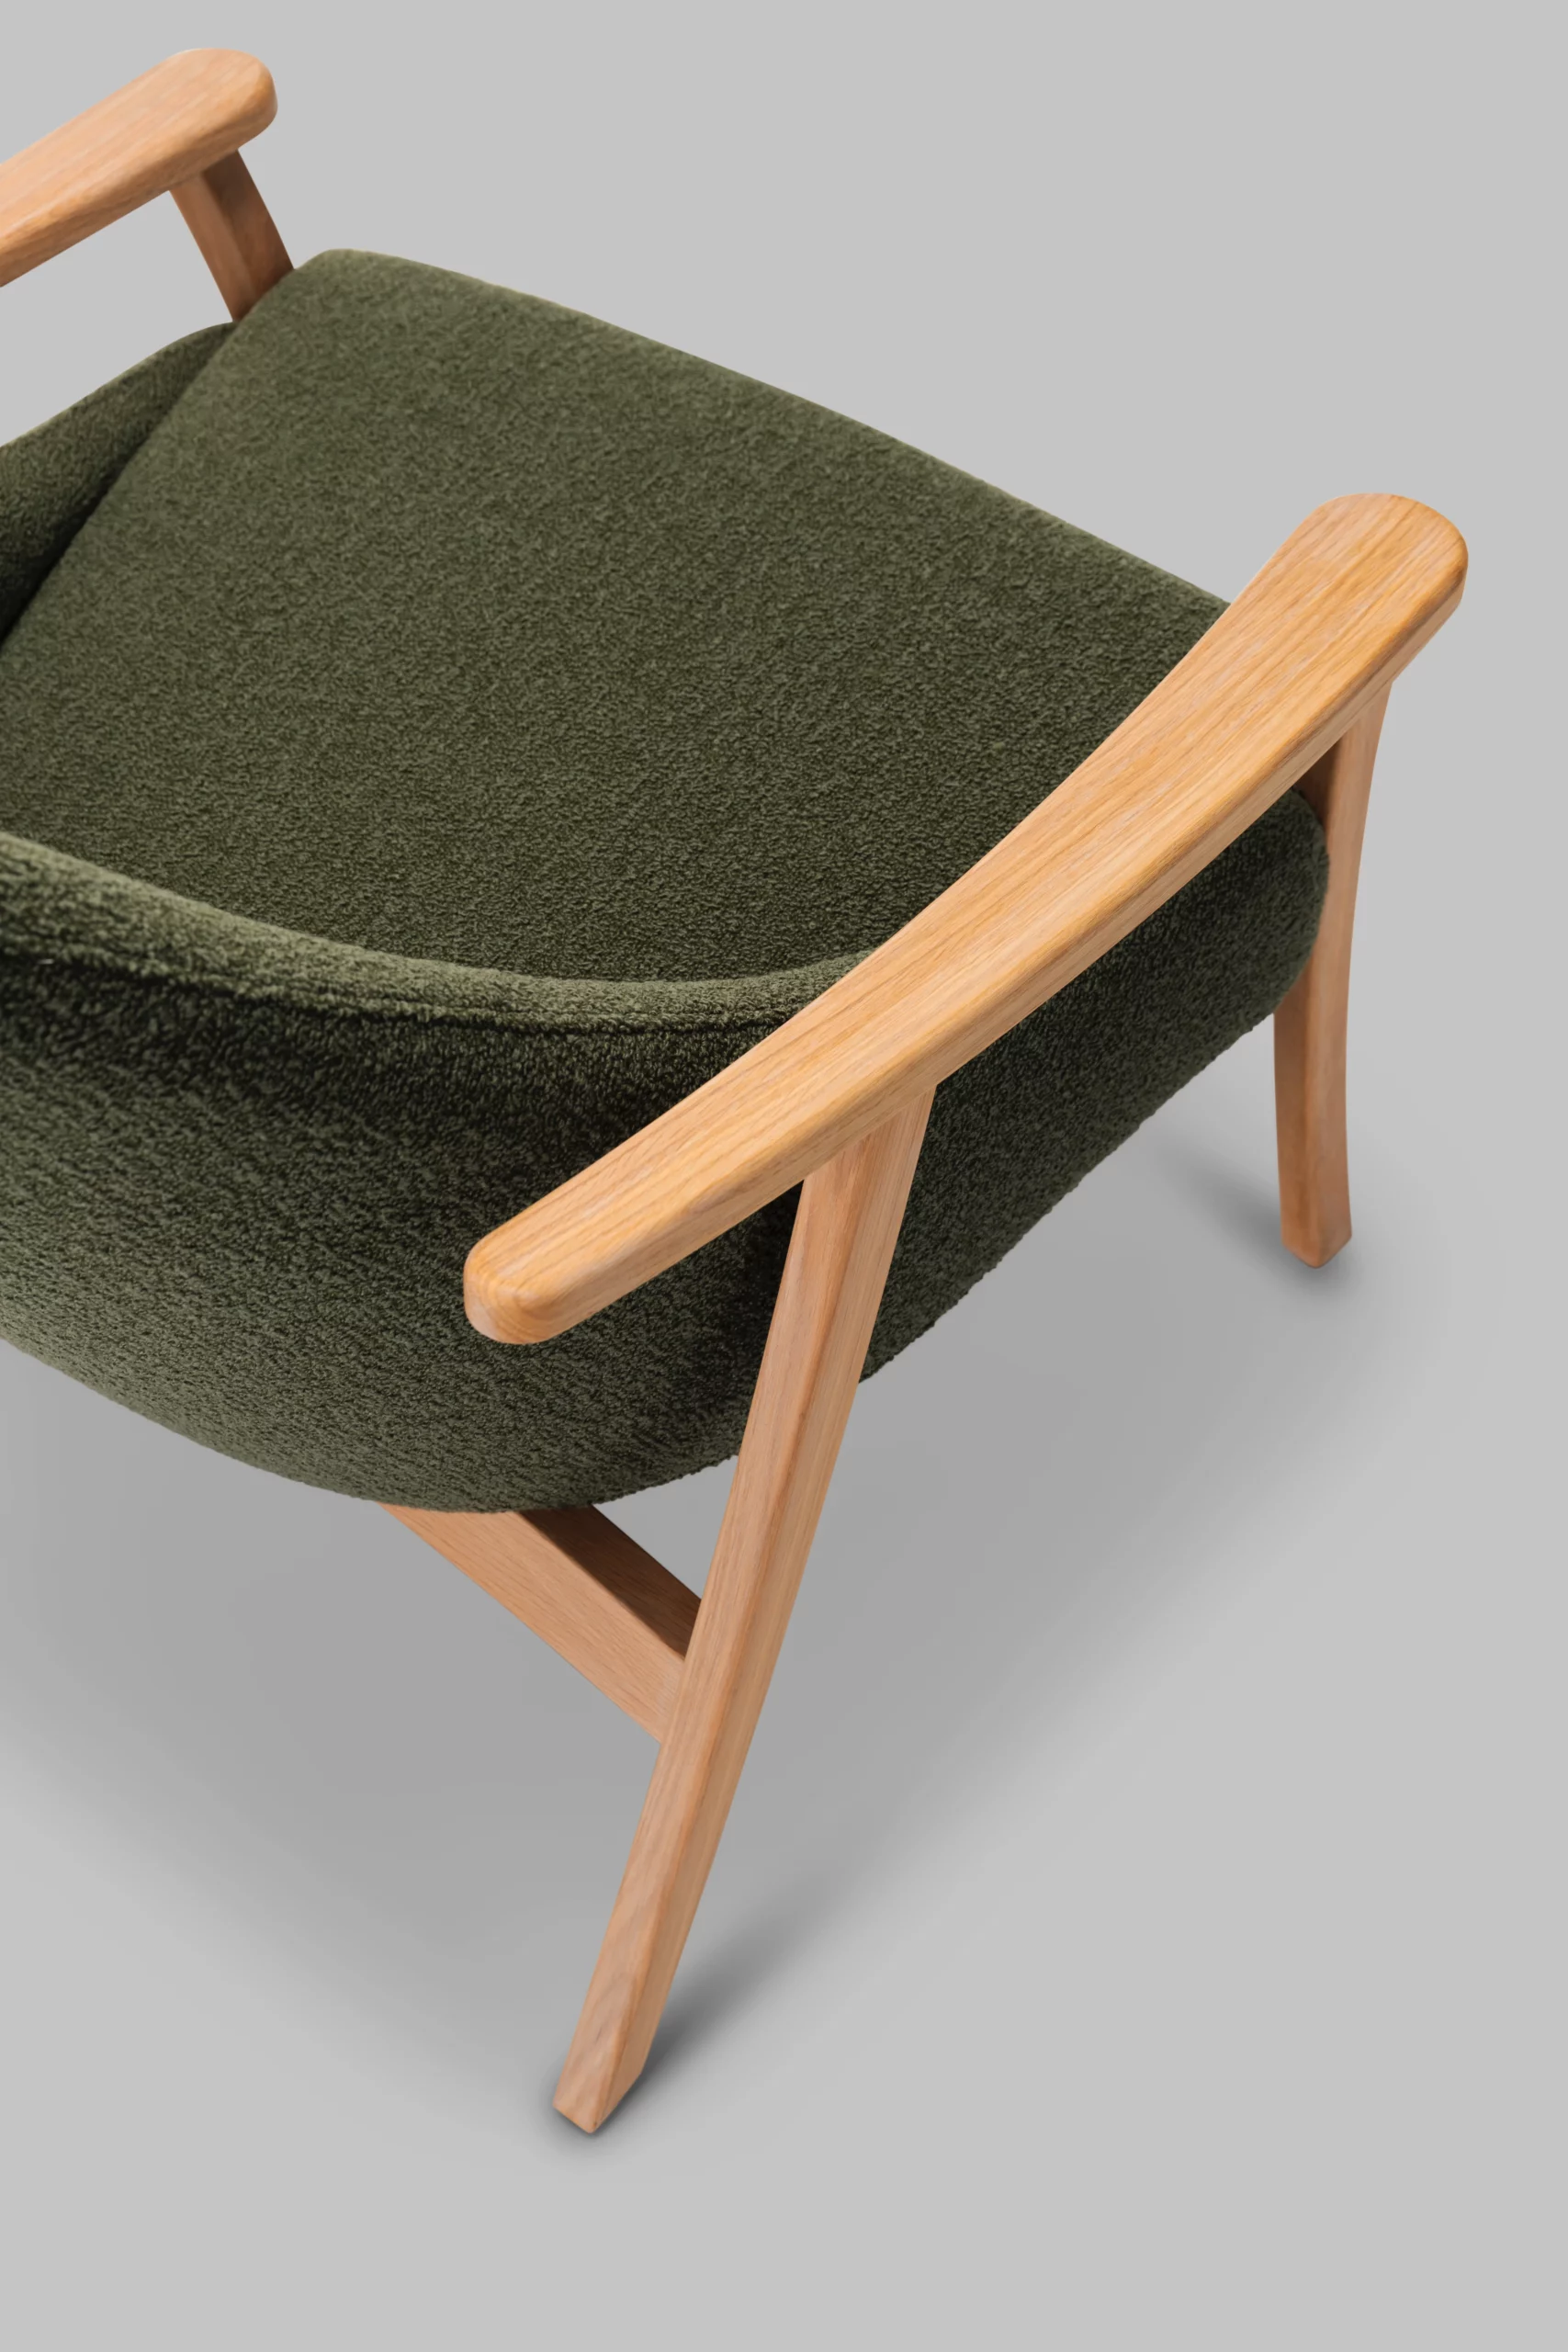 Harvink fauteuil Blazoen in stof Monza groen met frame eiken blanke lak